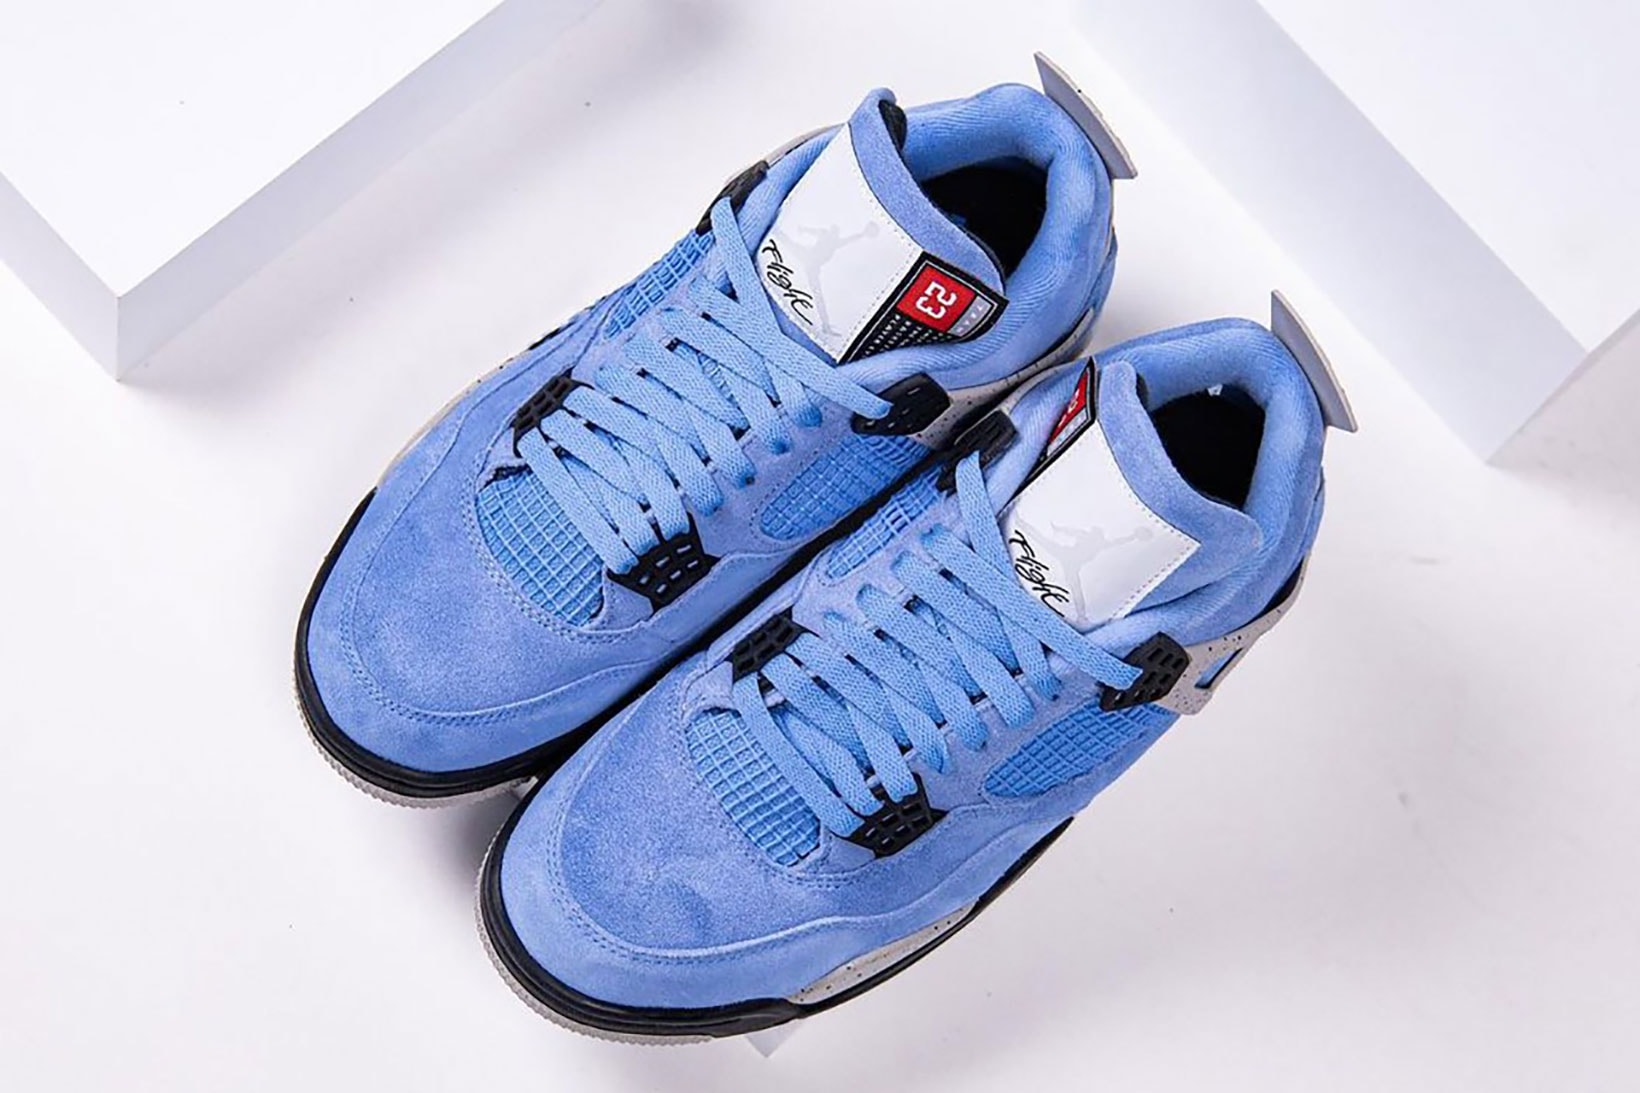 nike air jordan 4 sneakers university blue white colorway shoes footwear sneakerhead